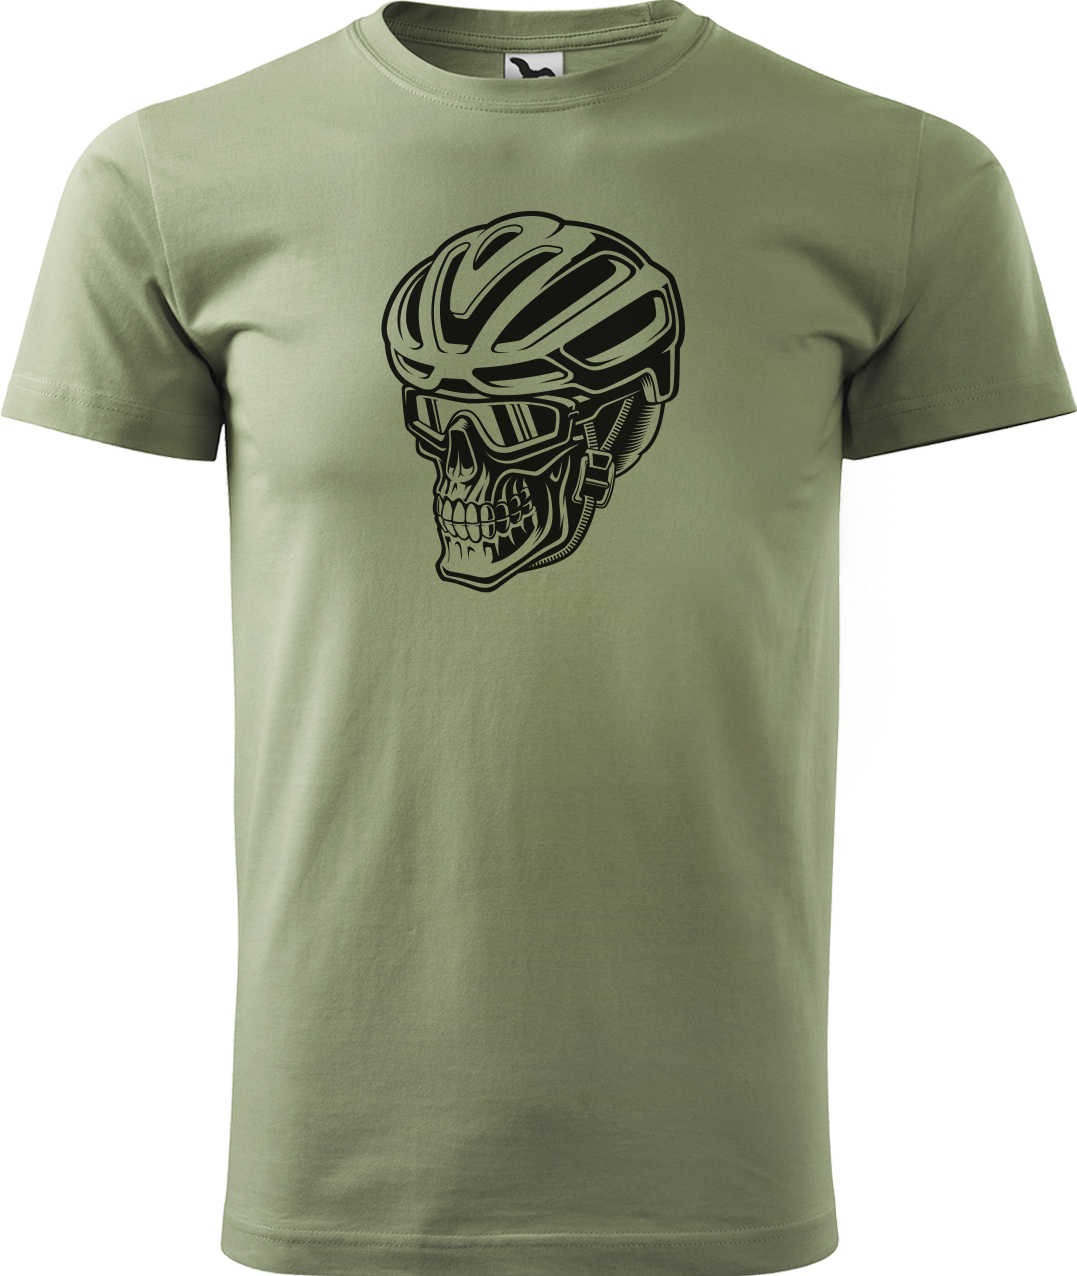 Pánské tričko pro cyklistu - Lebka v helmě Velikost: XL, Barva: Světlá khaki (28)